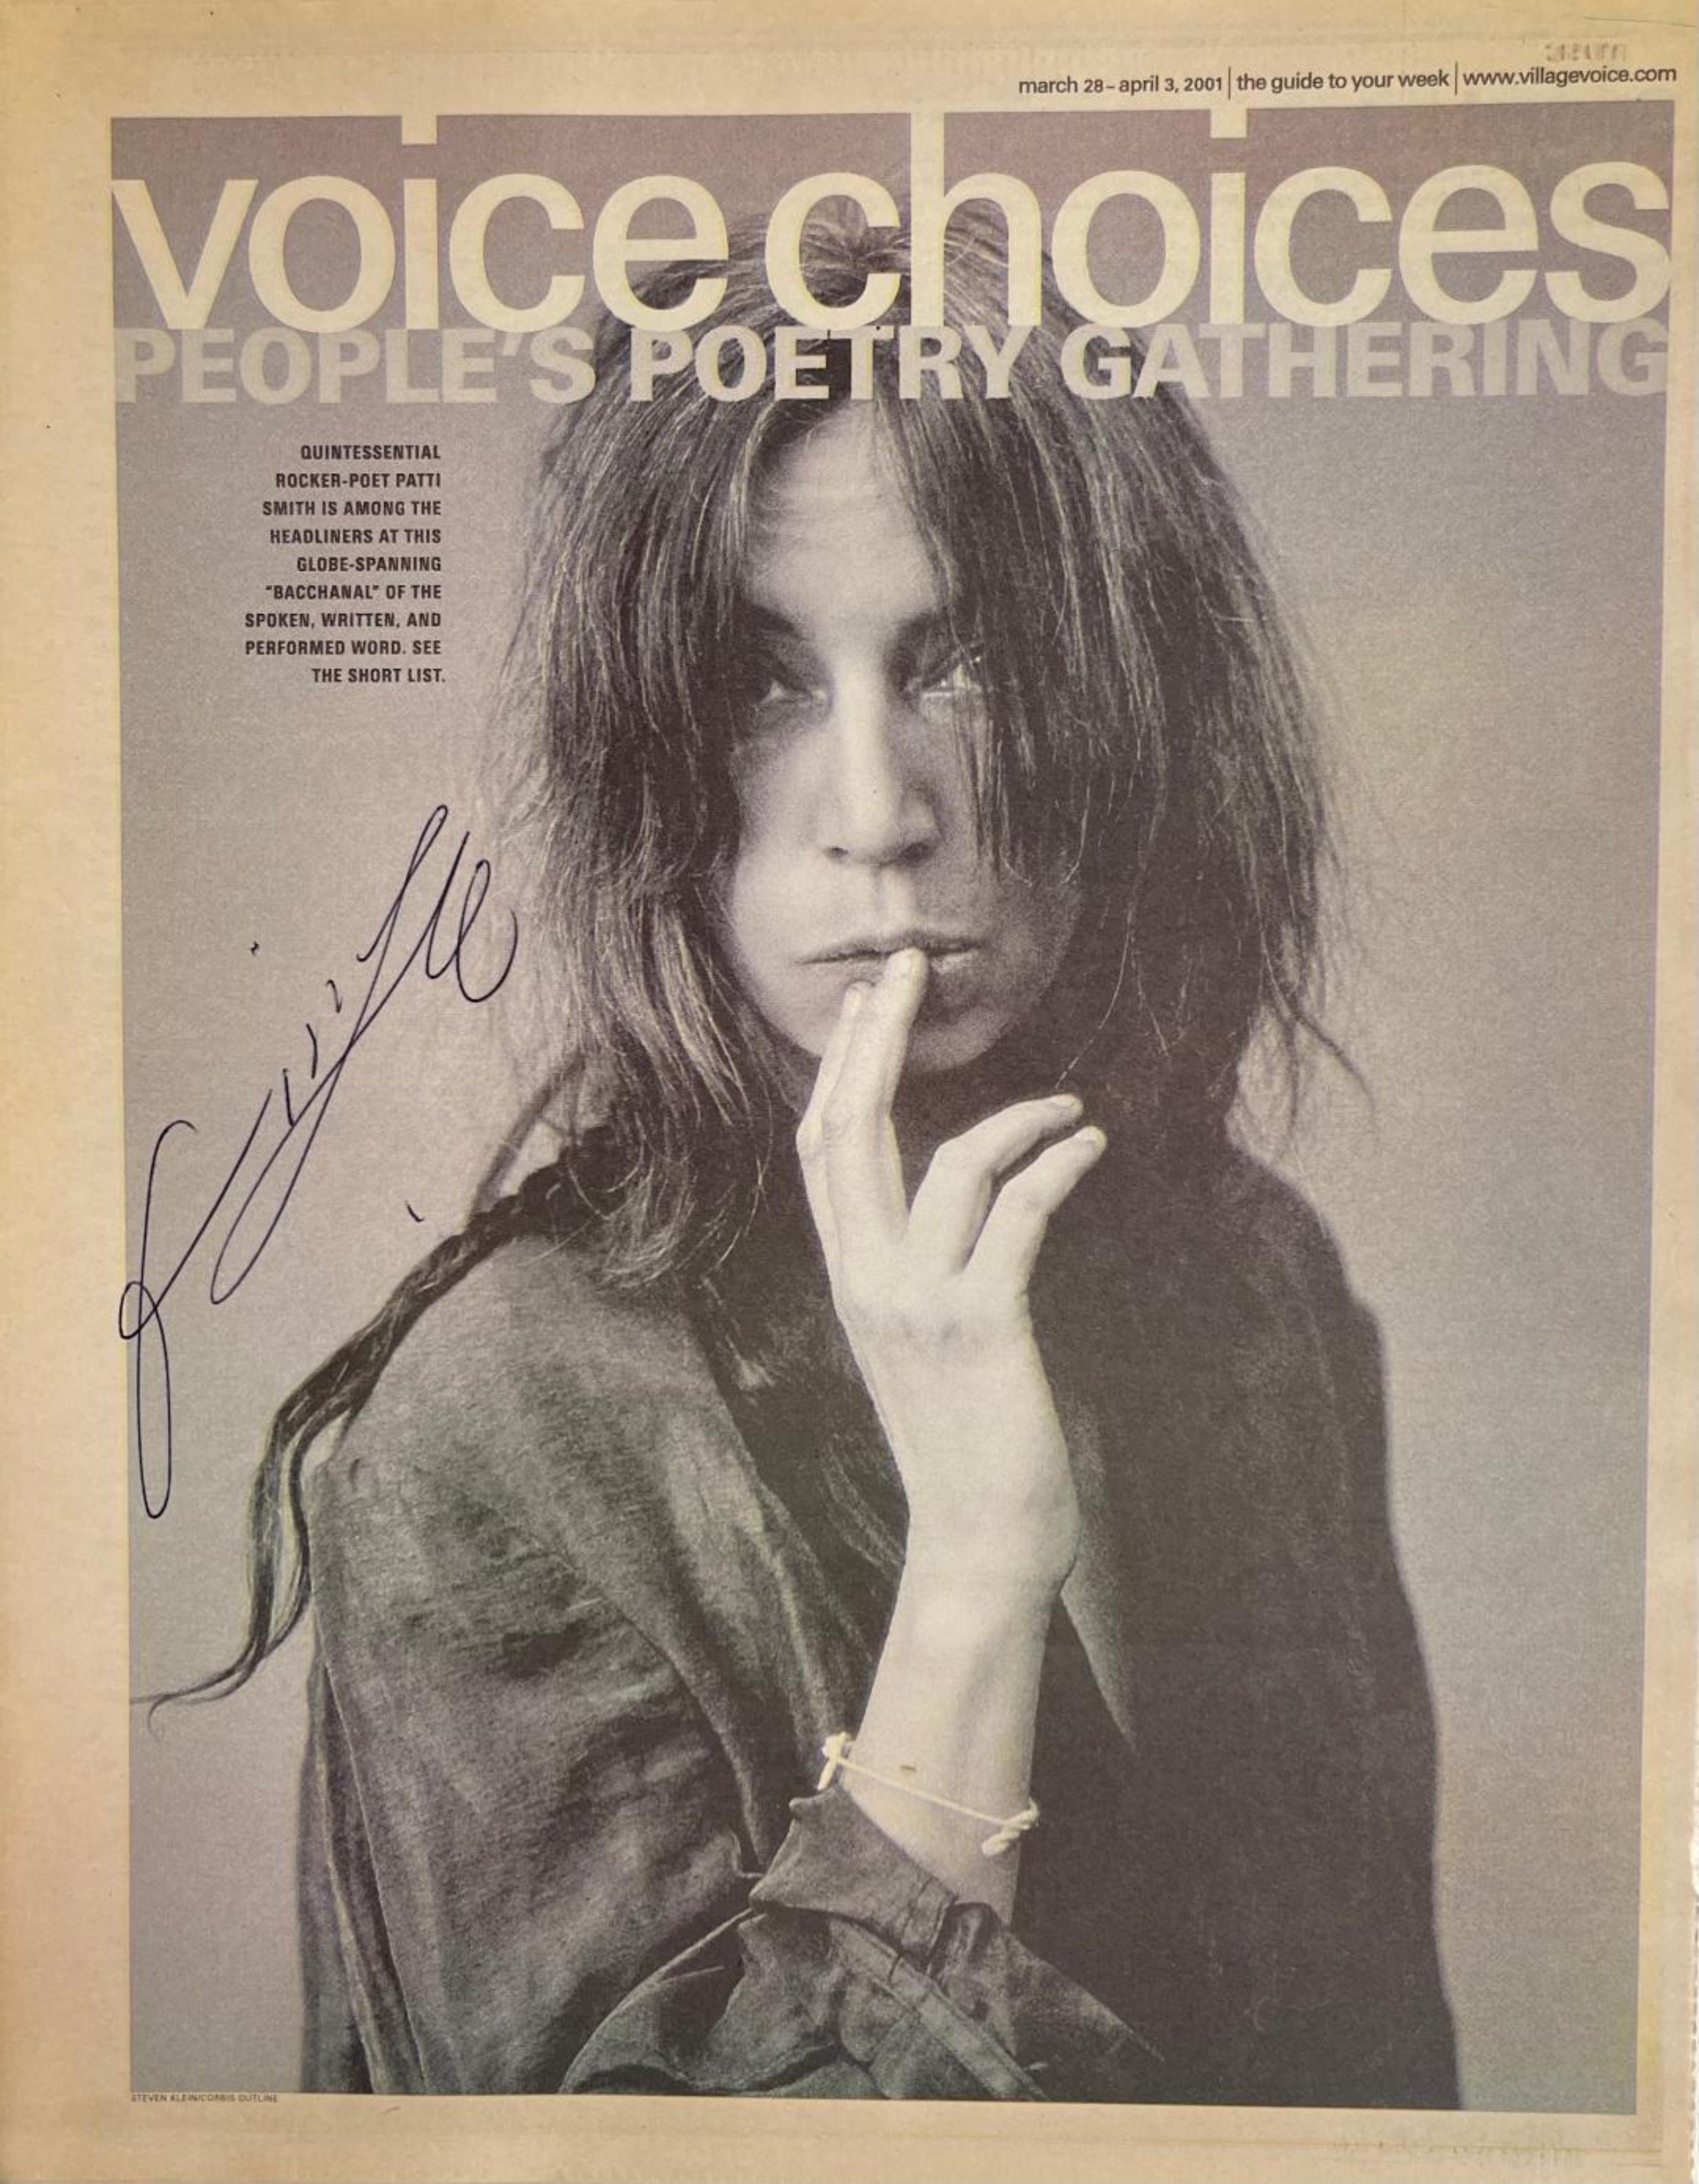 Village Voice newsmagazine insert (Voice Choices) von Patti Smith, handsigniert